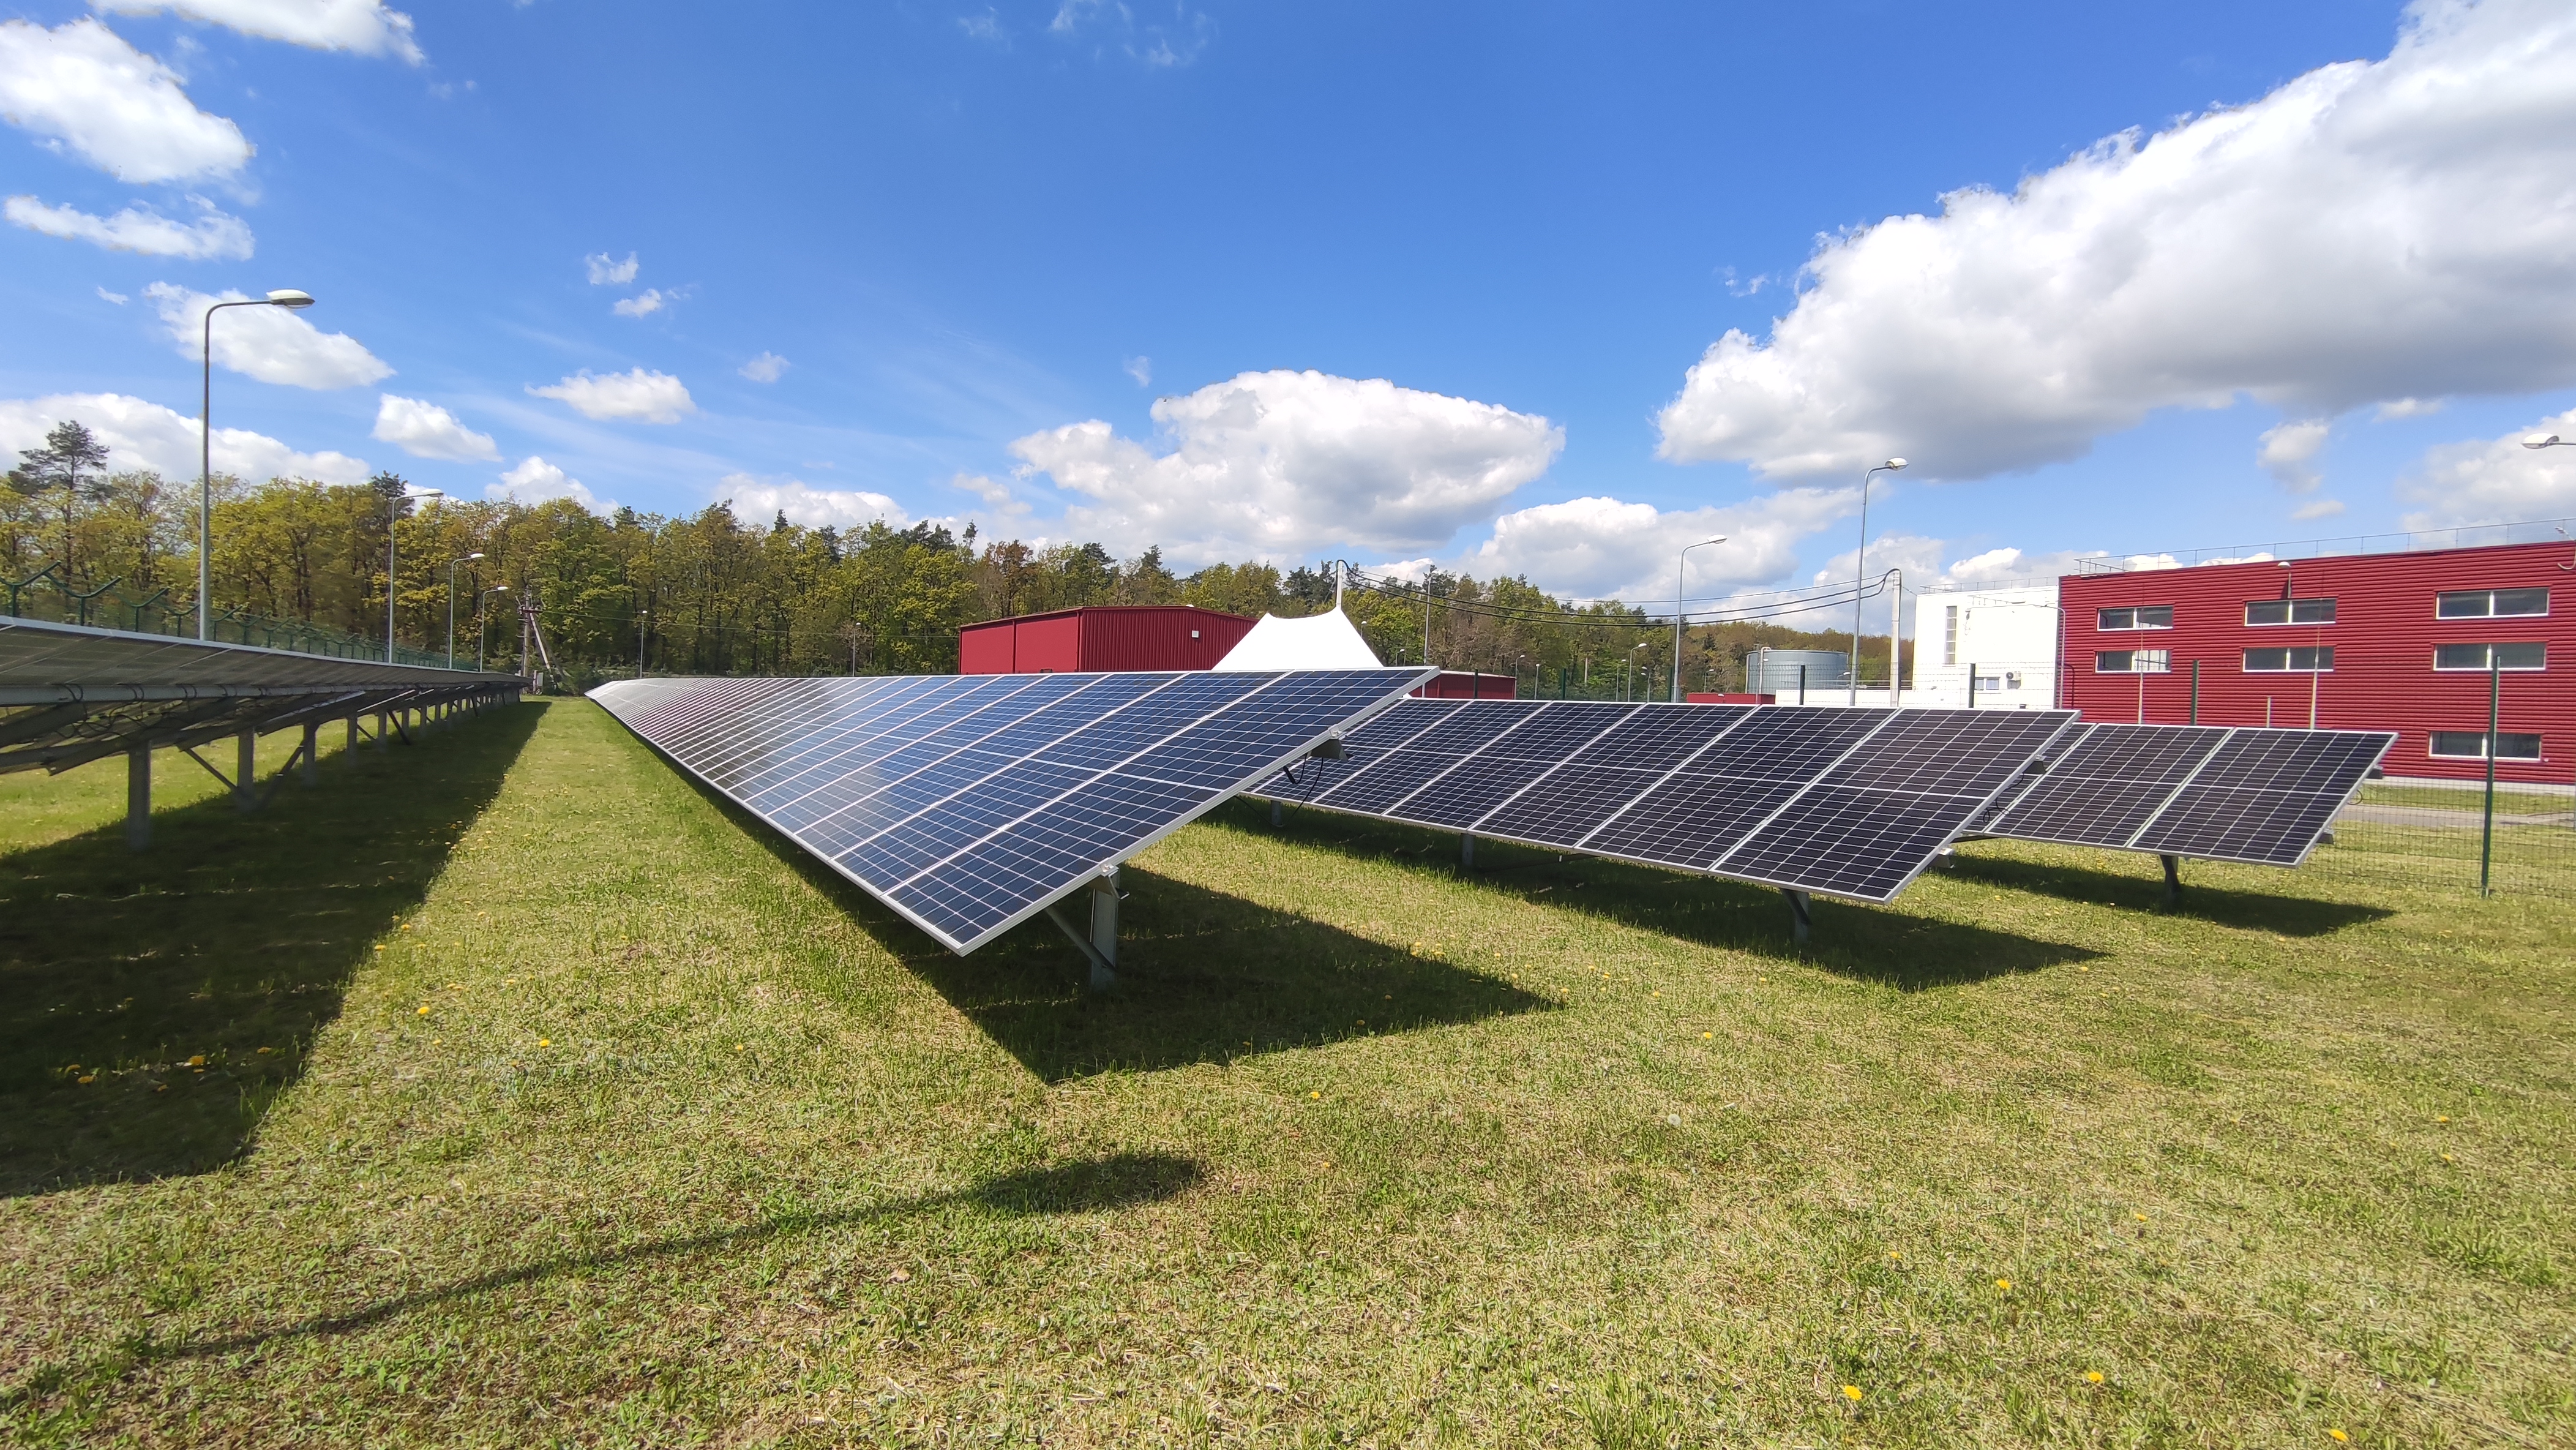 Сонячні панелі уже забезпечують 20%  потреб в енергії дистрибуційного центру у Малехові. Фото надане Nestlé